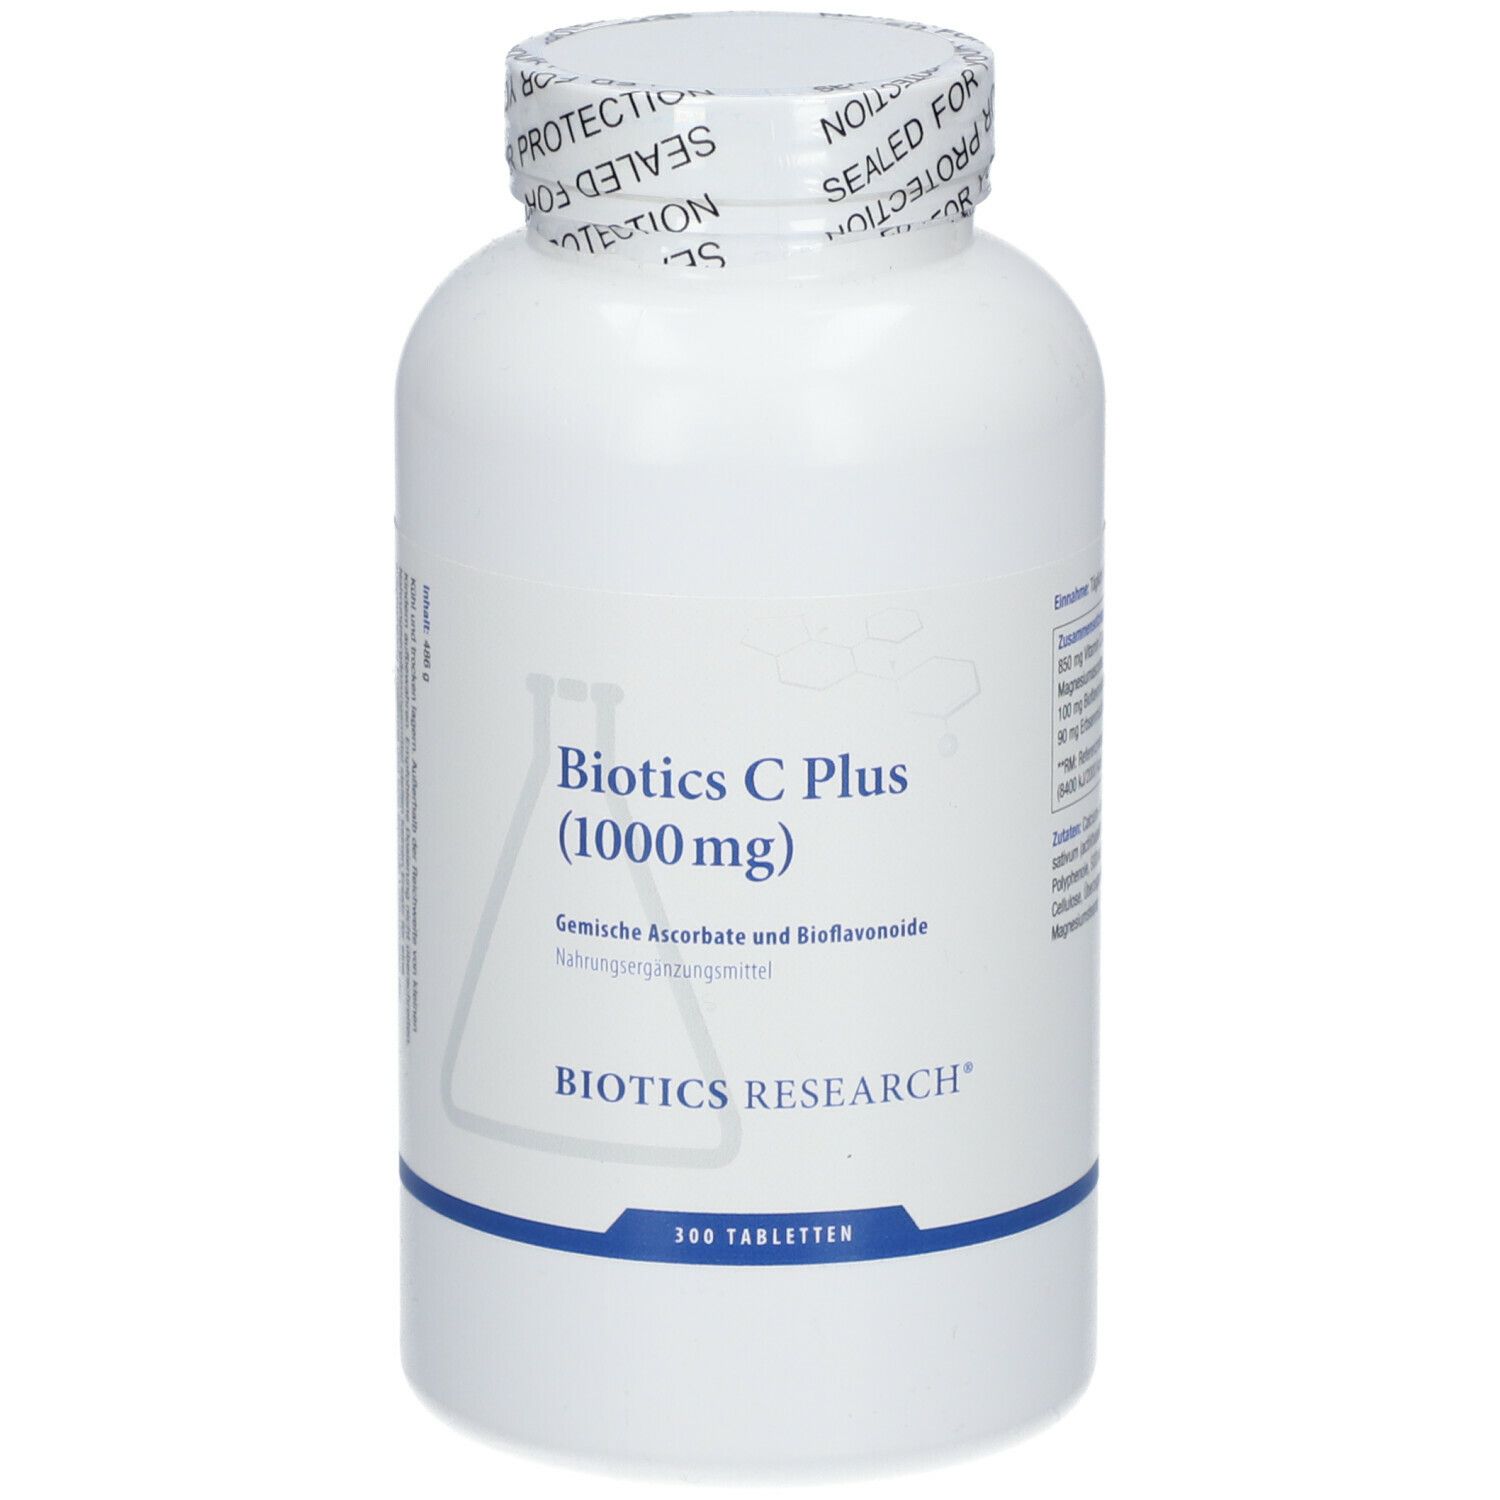 Biotics Research® Biotics C Plus